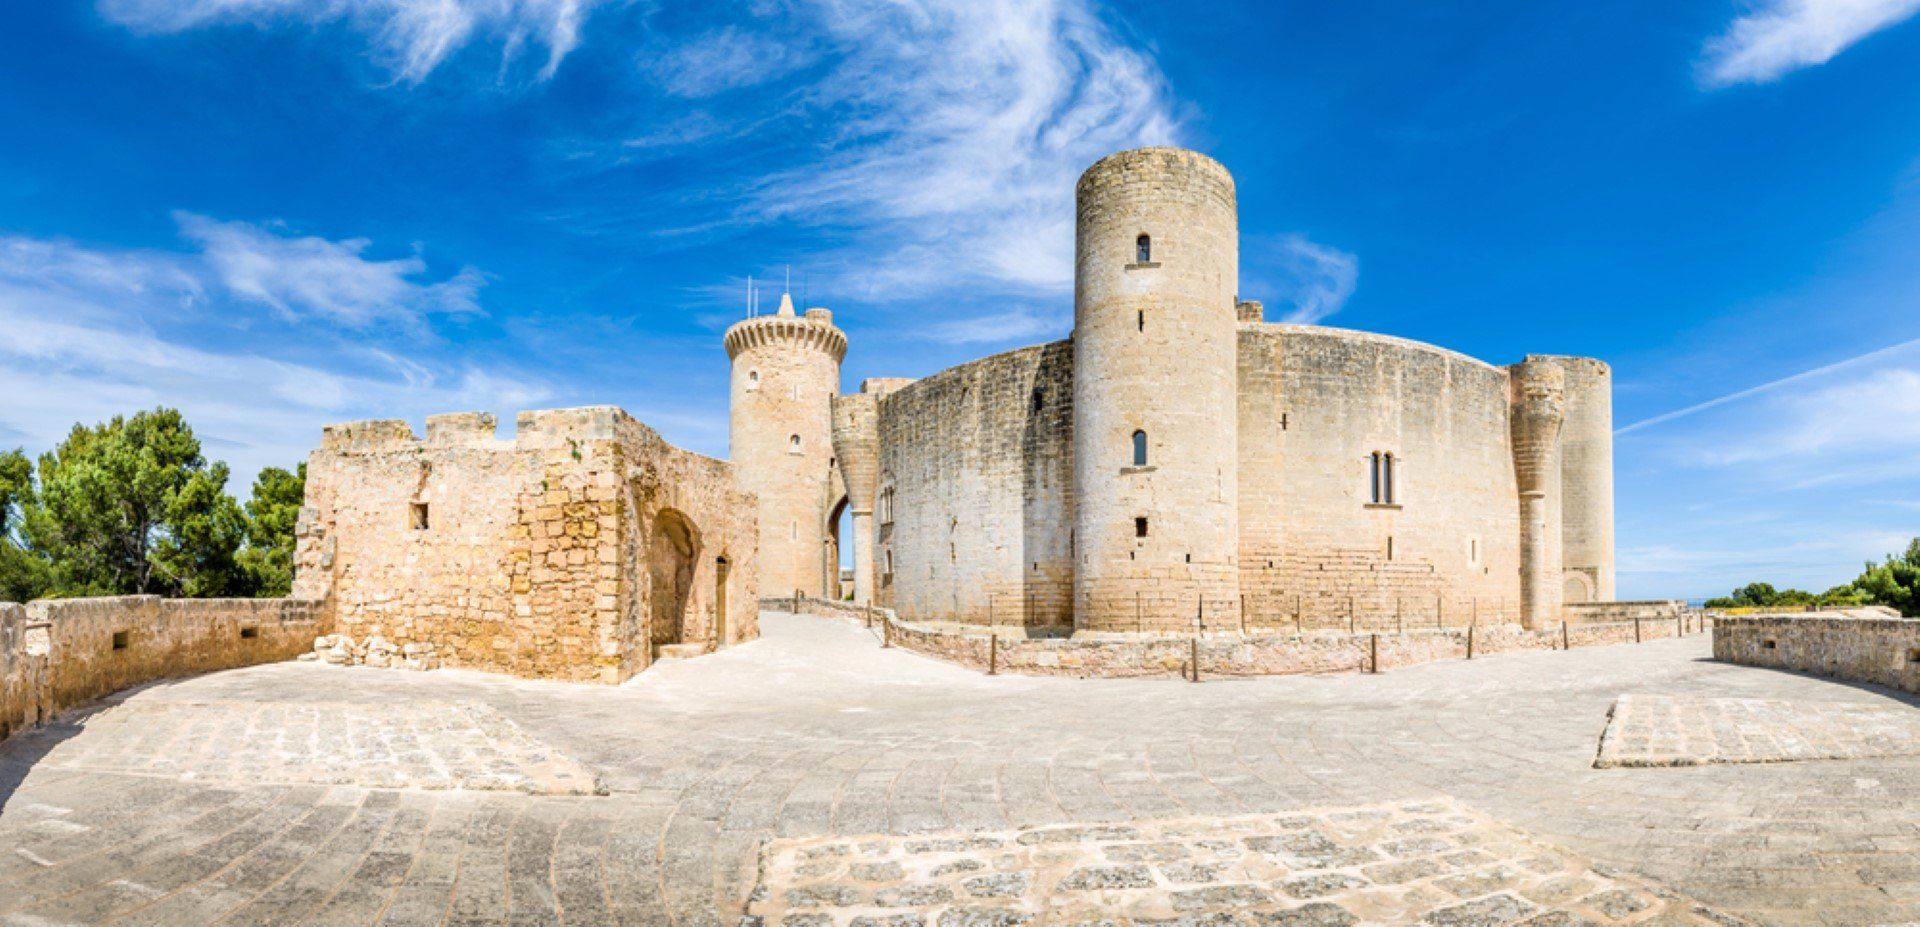 Bellver Castle - a historic gem 3km west of Palma's city centre